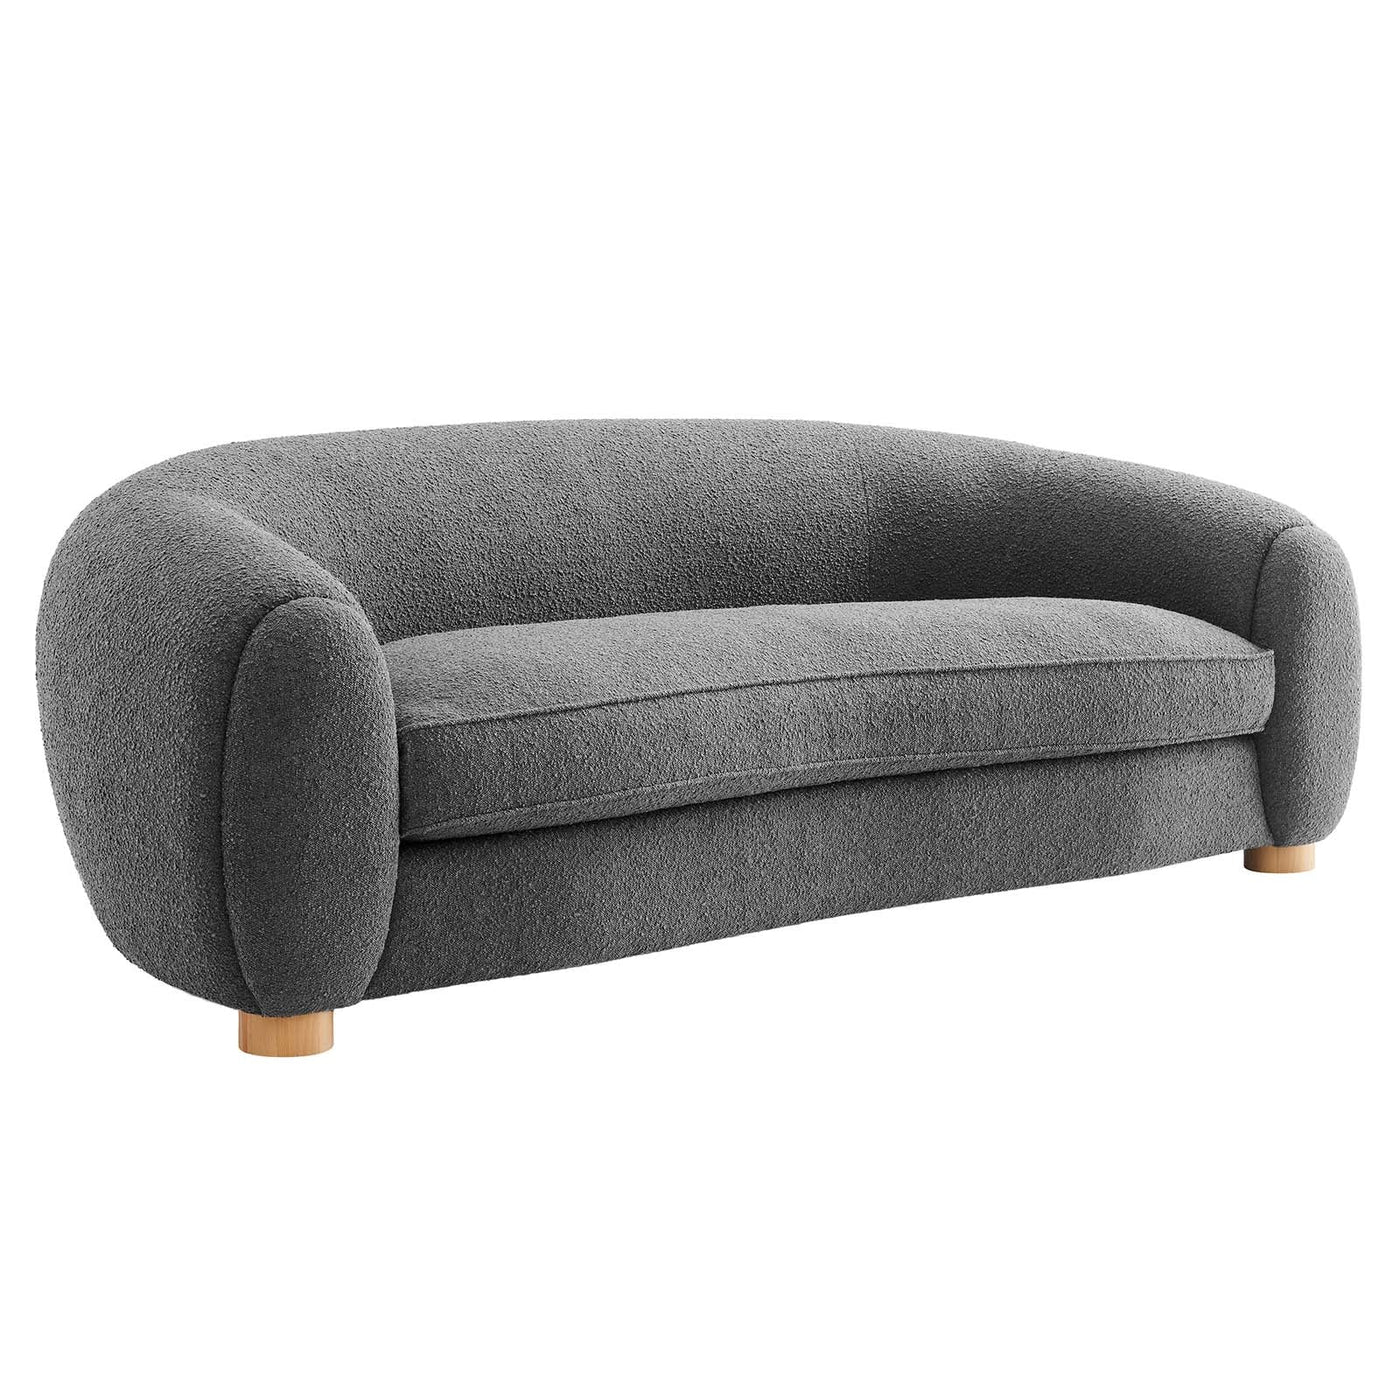 Abundant Boucle Upholstered Fabric Sofa